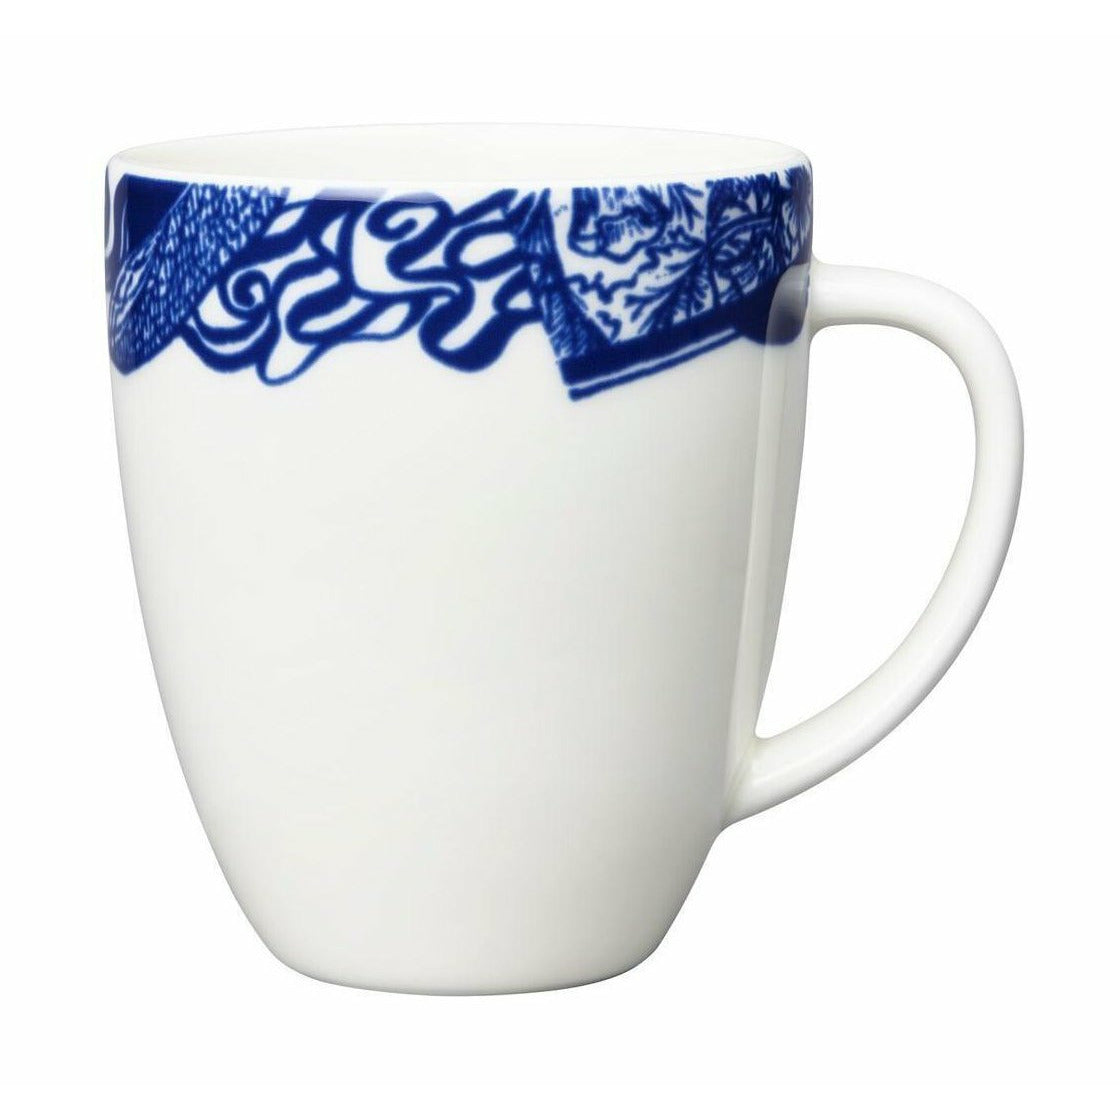 阿拉伯Pastoraali花瓶13厘米，白/蓝色